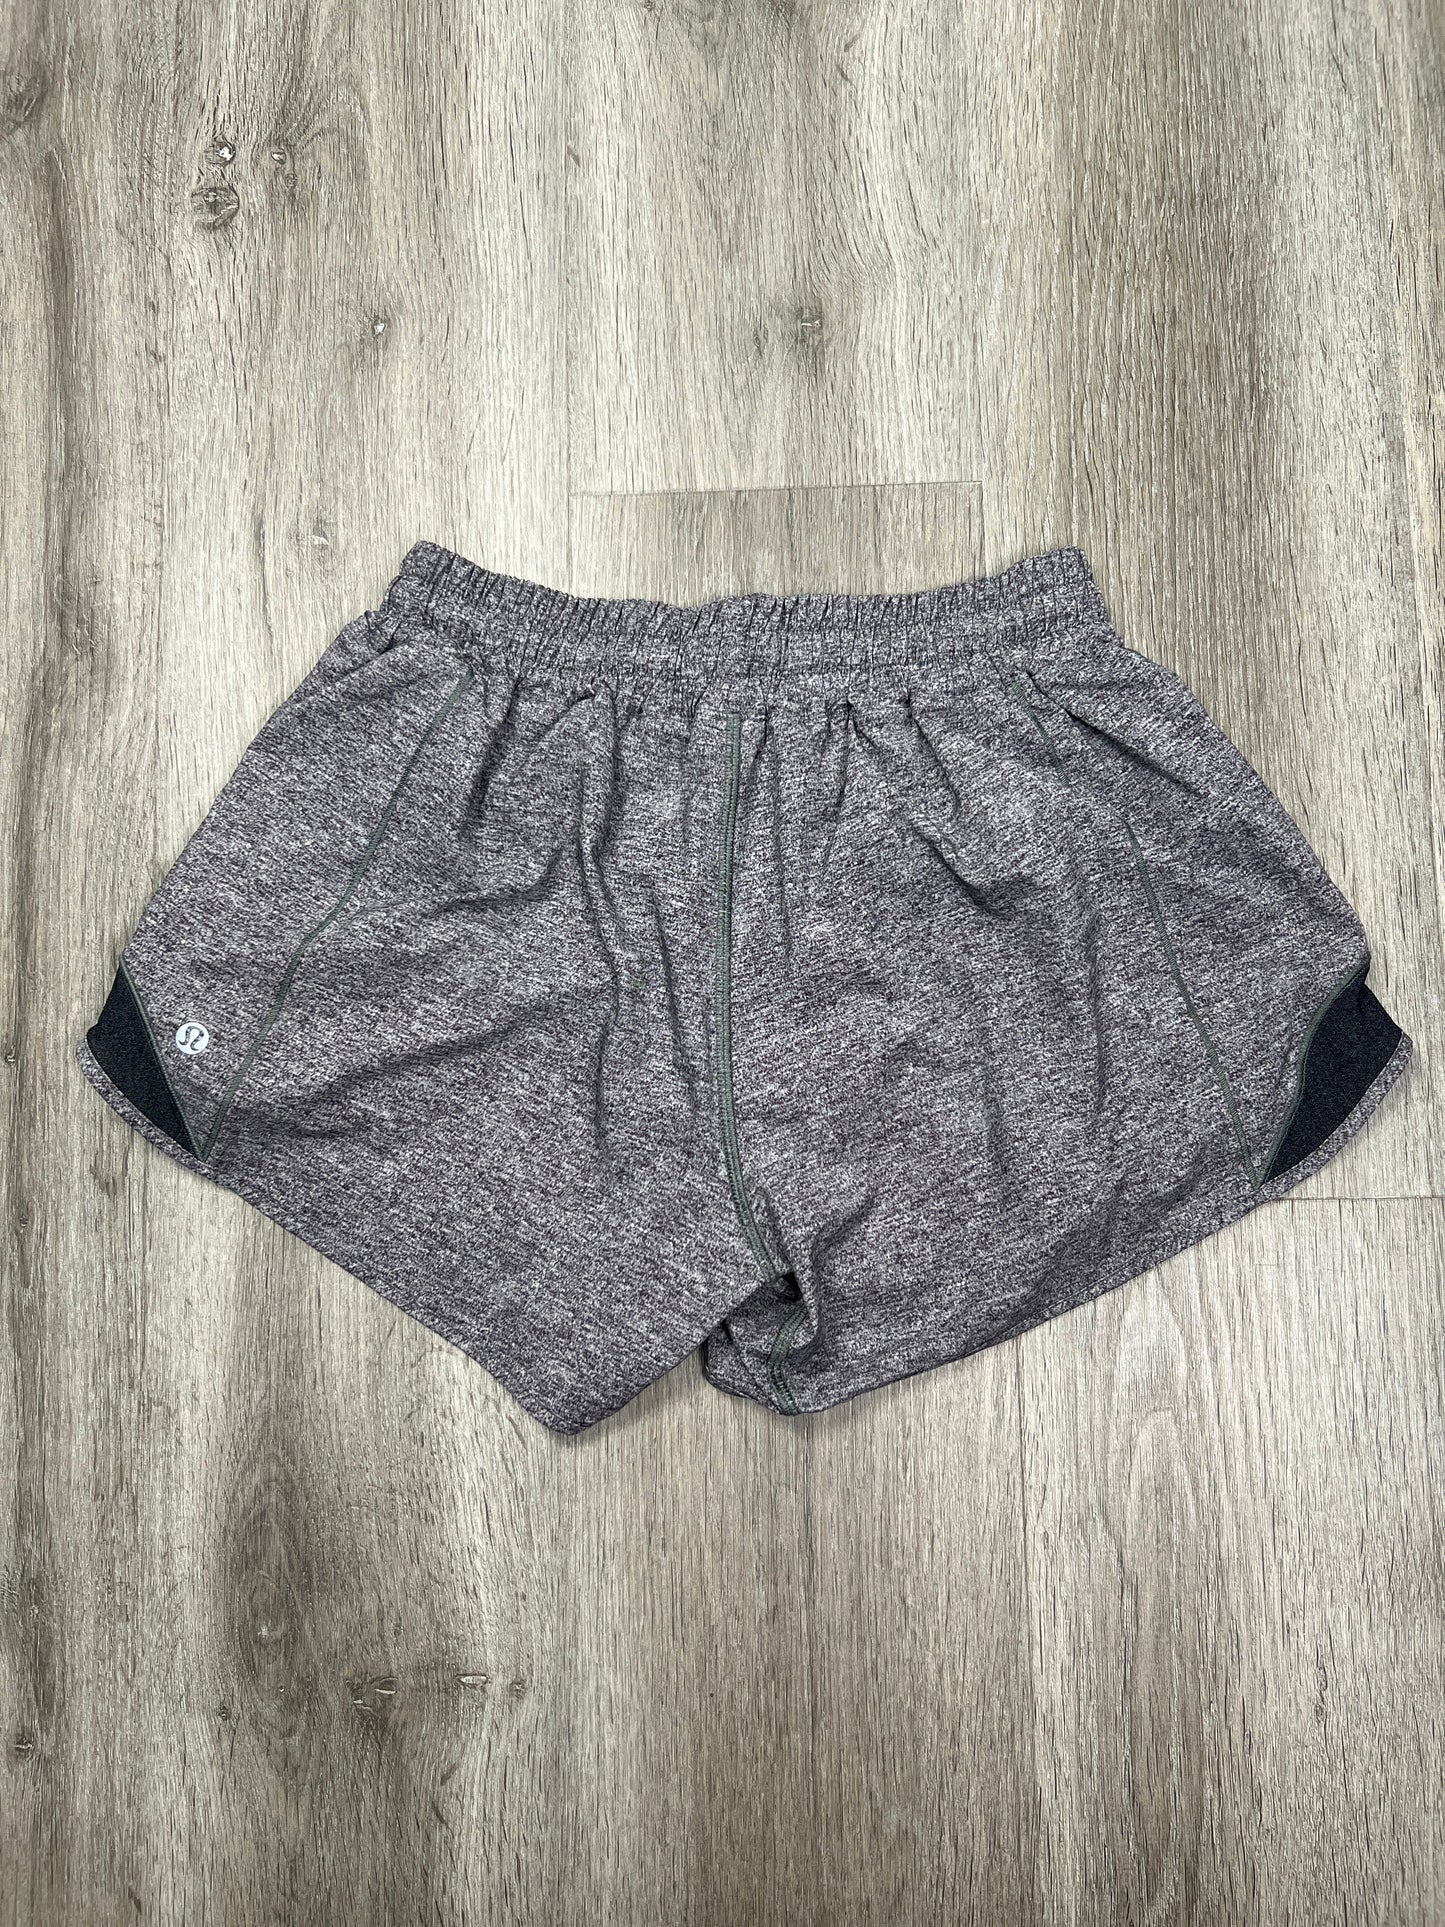 Grey Athletic Shorts Lululemon, Size S